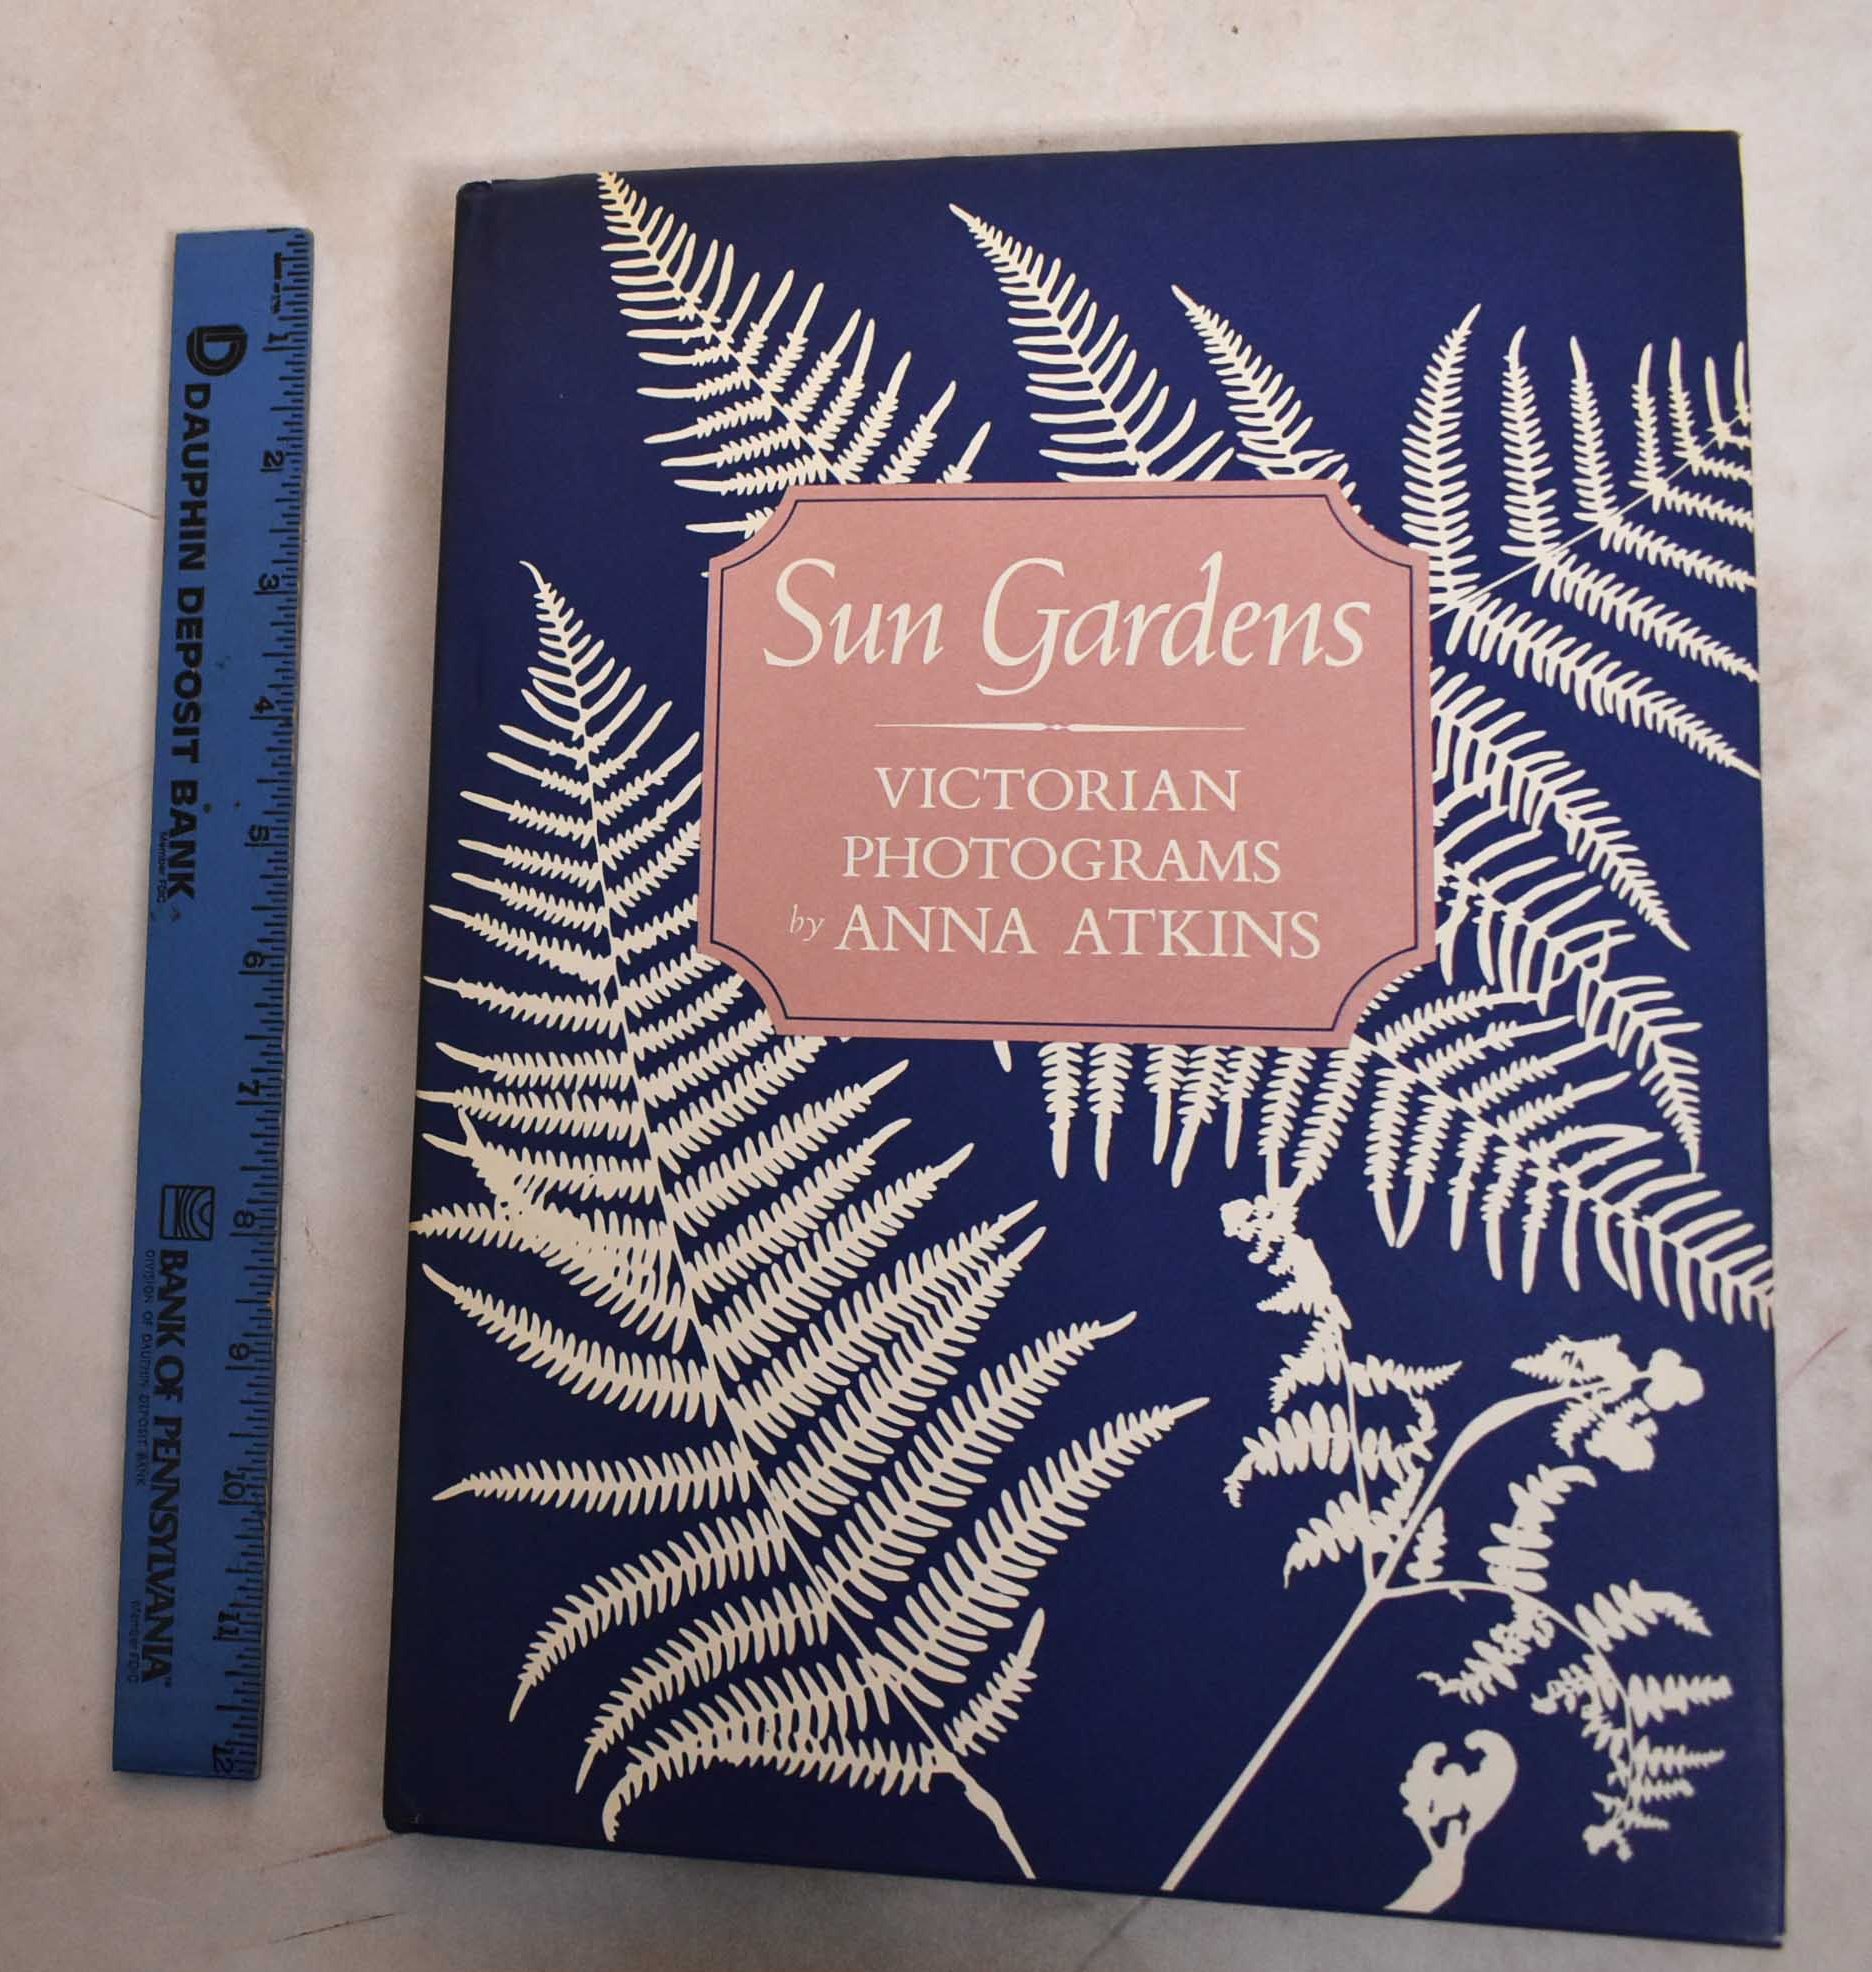 Sun Gardens: Victorian Photograms by Anna Atkins - Schaaf, Larry J. (text)